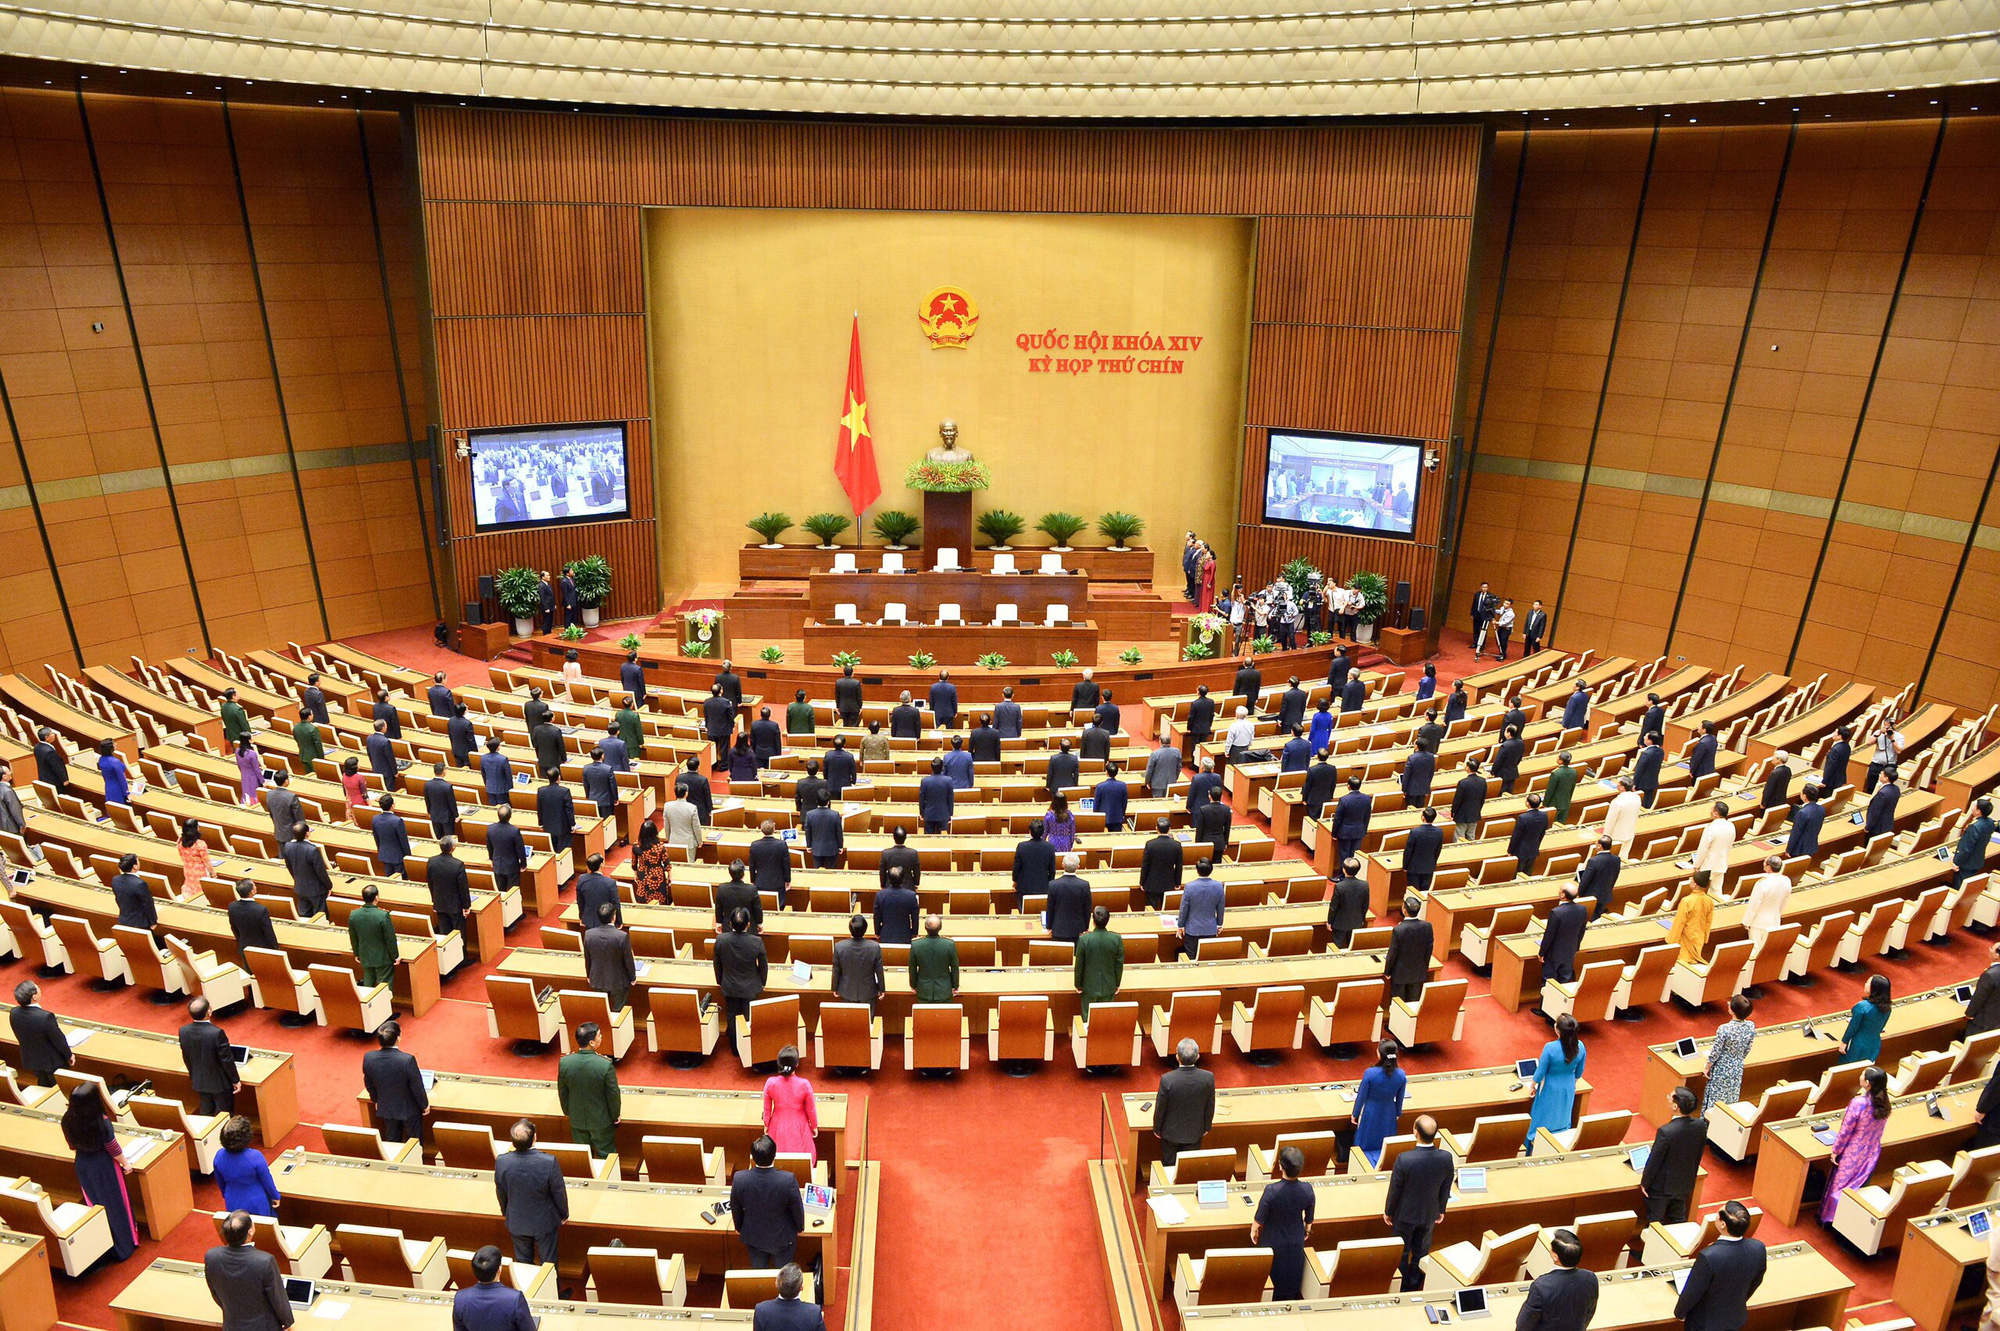 Hình ảnh bên lề phiên khai mạc Kỳ họp thứ 9 Quốc hội khóa XIV